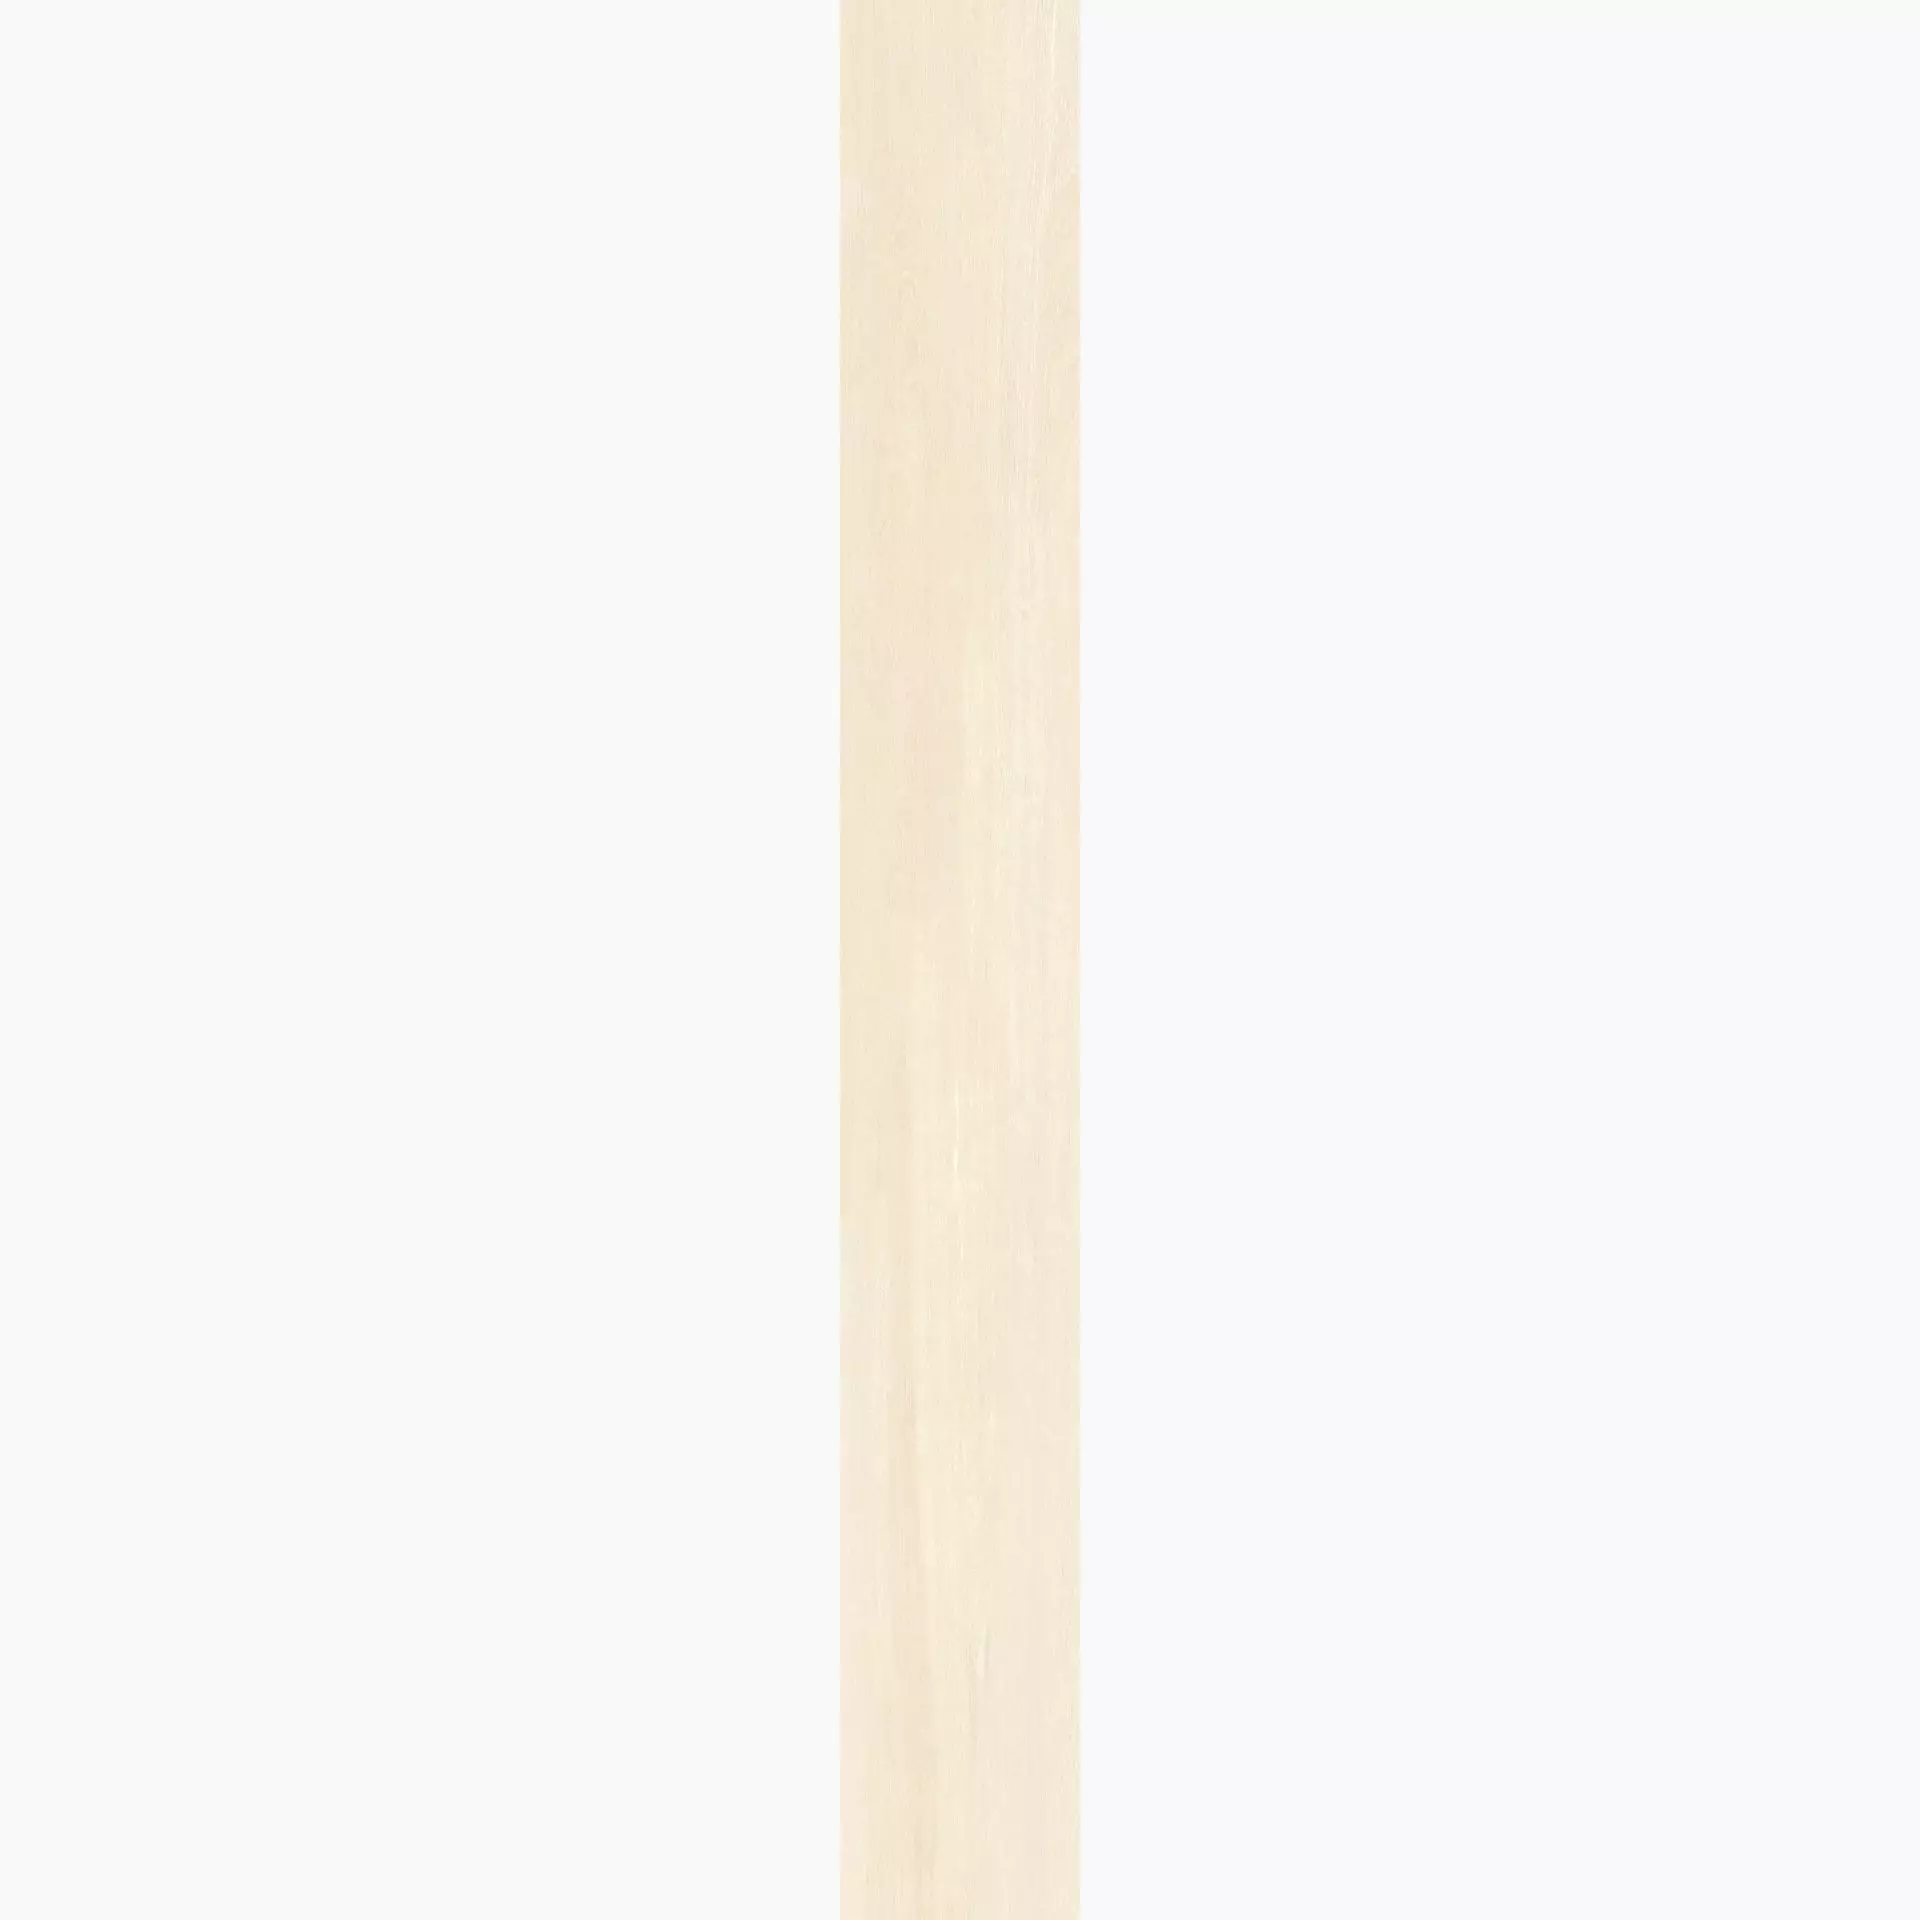 Casalgrande Planks Beige Naturale – Matt 10930083 30x240cm rectified 6mm